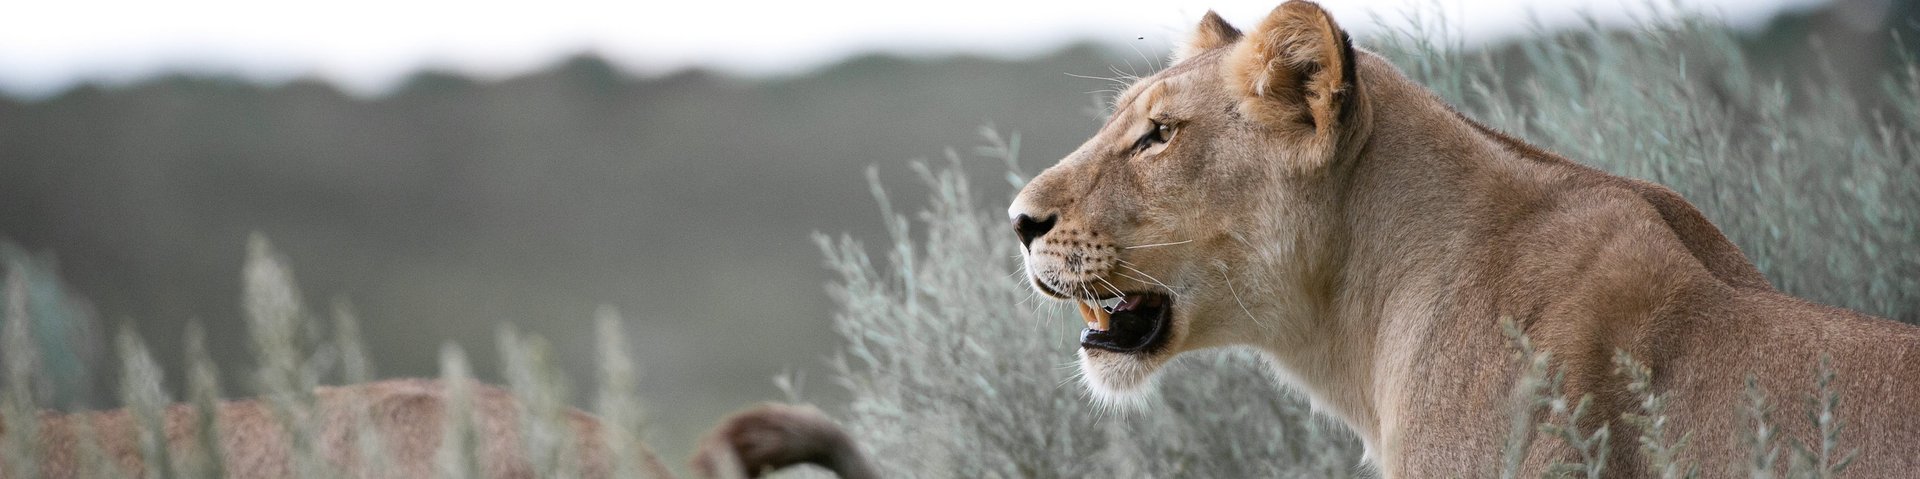 Löwen im Gras in Südafrika